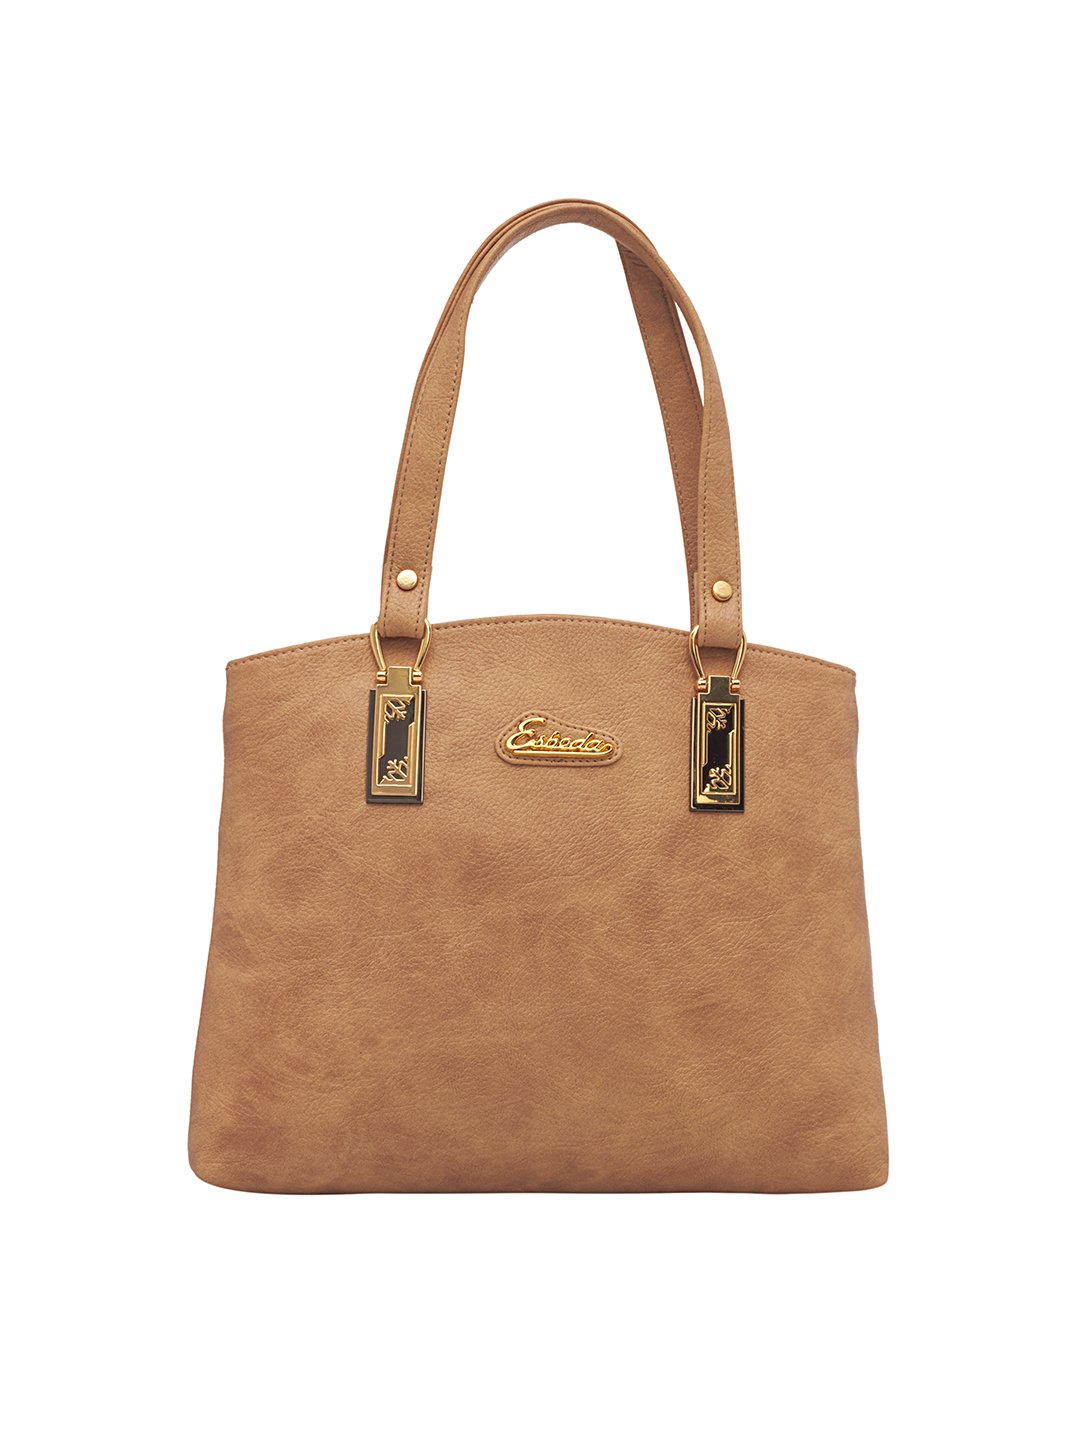 Buy ESBEDA Peach Color Solid Pattern Croco Handbag For Women at Amazon.in